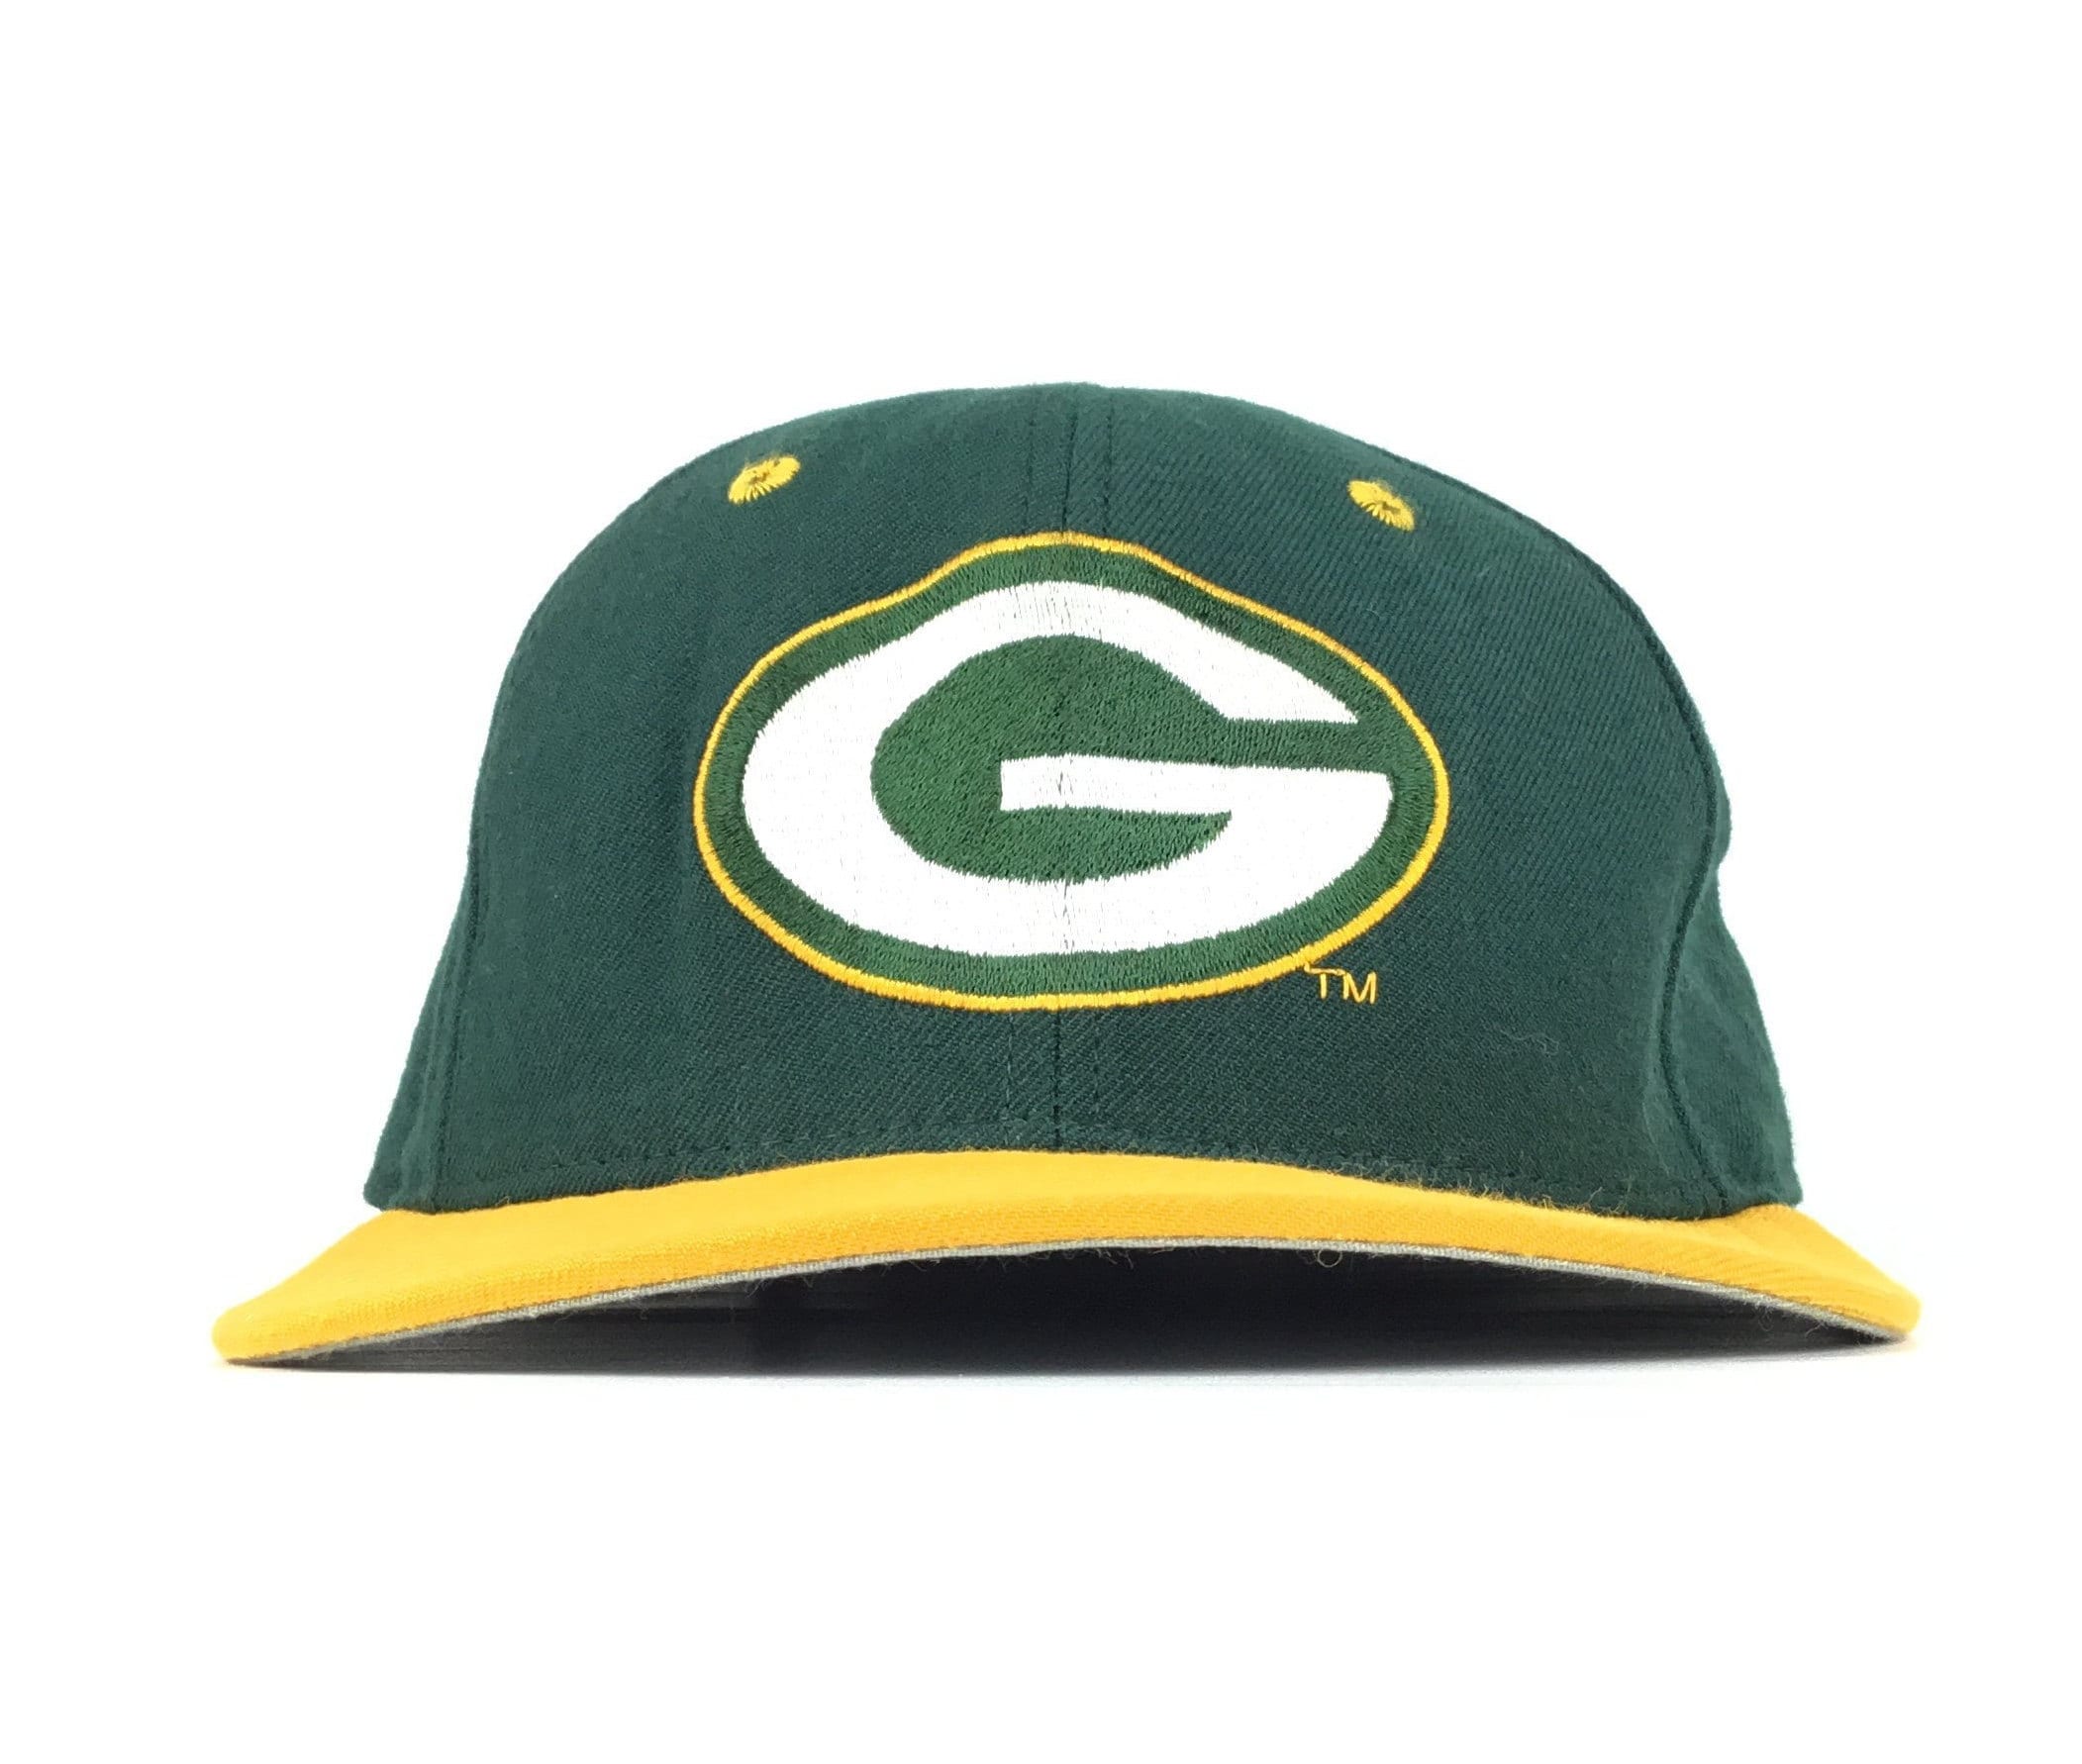 new era packers hat